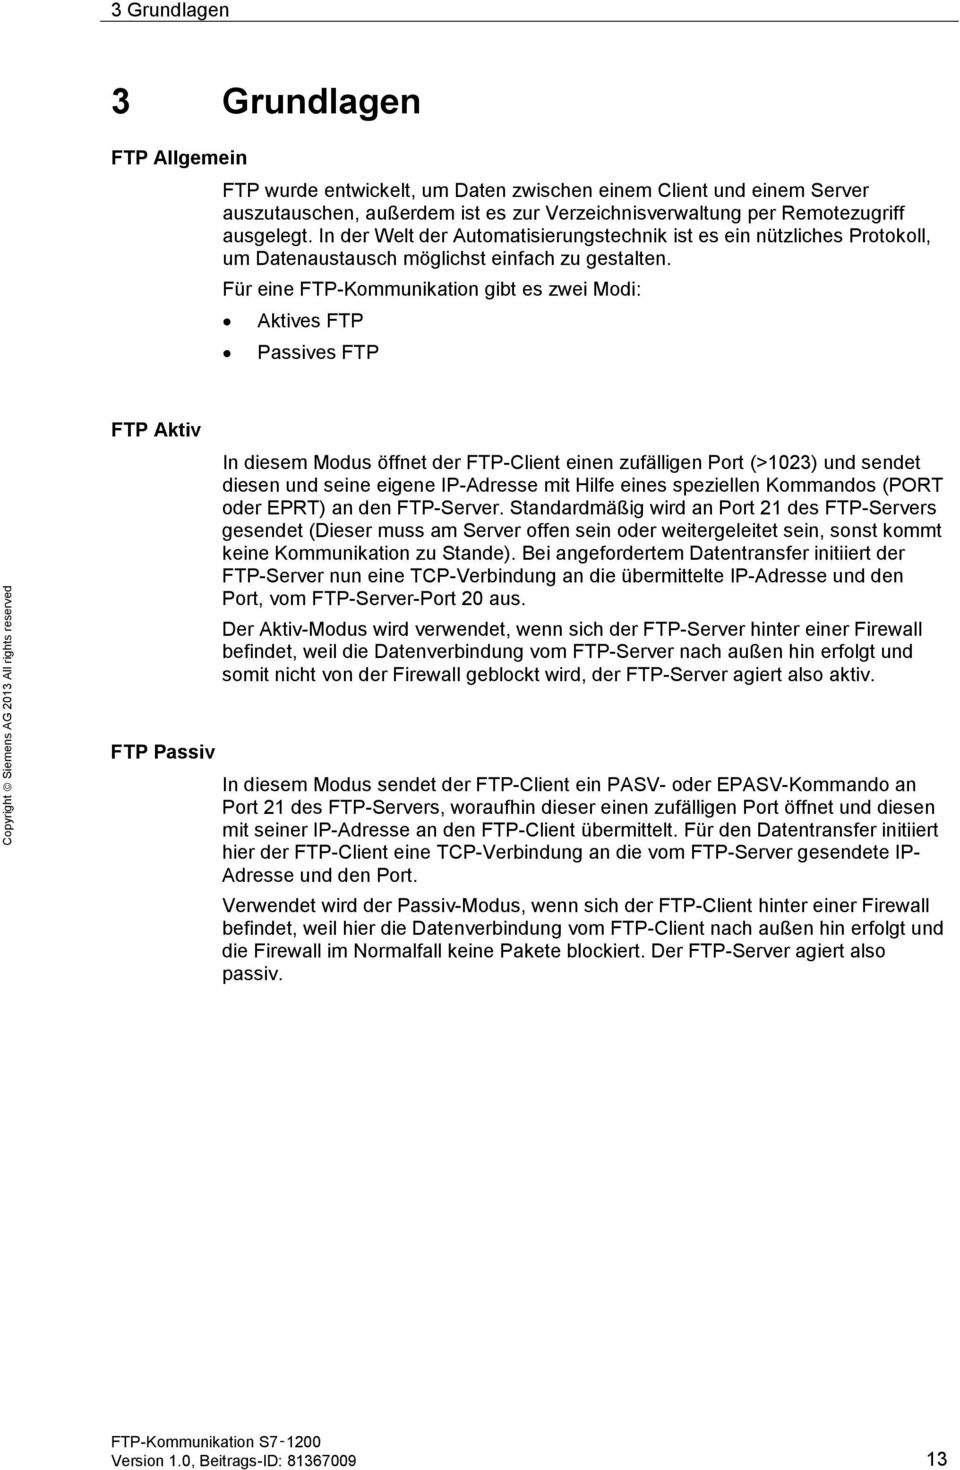 Für eine FTP-Kommunikation gibt es zwei Modi: Aktives FTP Passives FTP FTP Aktiv FTP Passiv In diesem Modus öffnet der FTP-Client einen zufälligen Port (>1023) und sendet diesen und seine eigene